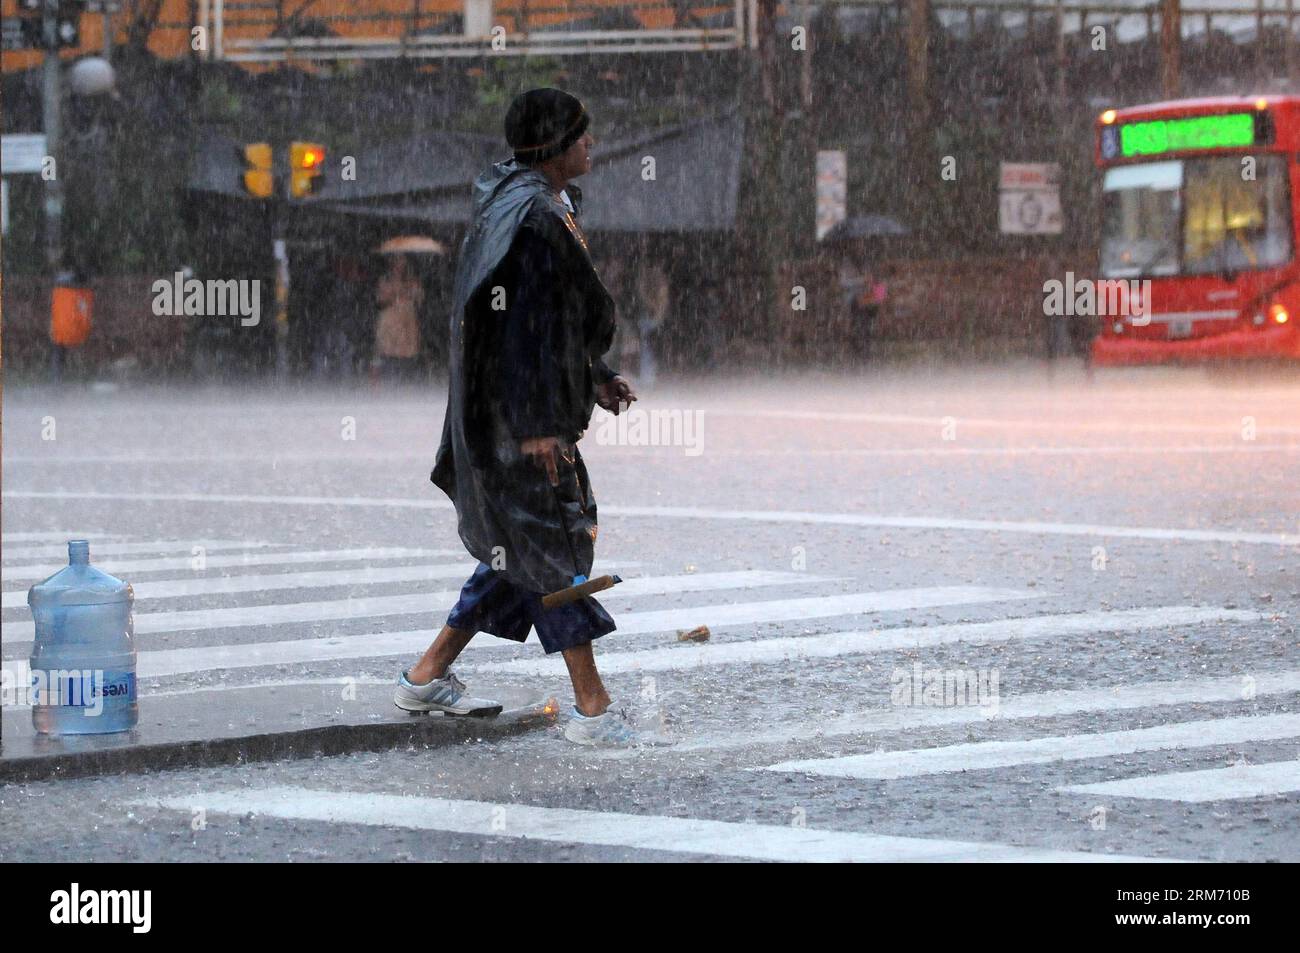 Un uomo cammina sotto la pioggia in una strada a Buenos Aires, capitale dell'Argentina, il 7 febbraio 2014. Le calamità di venerdì mattina a Buenos Aires hanno inondato le aree dei comuni di la Plata ed Ensenada e causato l'evacuazione di persone nella cittadina di Berisso, secondo la stampa locale. (Xinhua/Leonardo Zavattaro/TELAM) (rh) (rt) ARGENTINA-BUENOS AIRES-AMBIENTE-CLIMA PUBLICATIONxNOTxINxCHN un uomo cammina nella pioggia IN una strada a Buenos Aires città capitale dell'Argentina IL 7 febbraio 2014 da venerdì mattina a Buenos Aires hanno inondato le aree dei comuni di la Plata e Ensenada e C Foto Stock